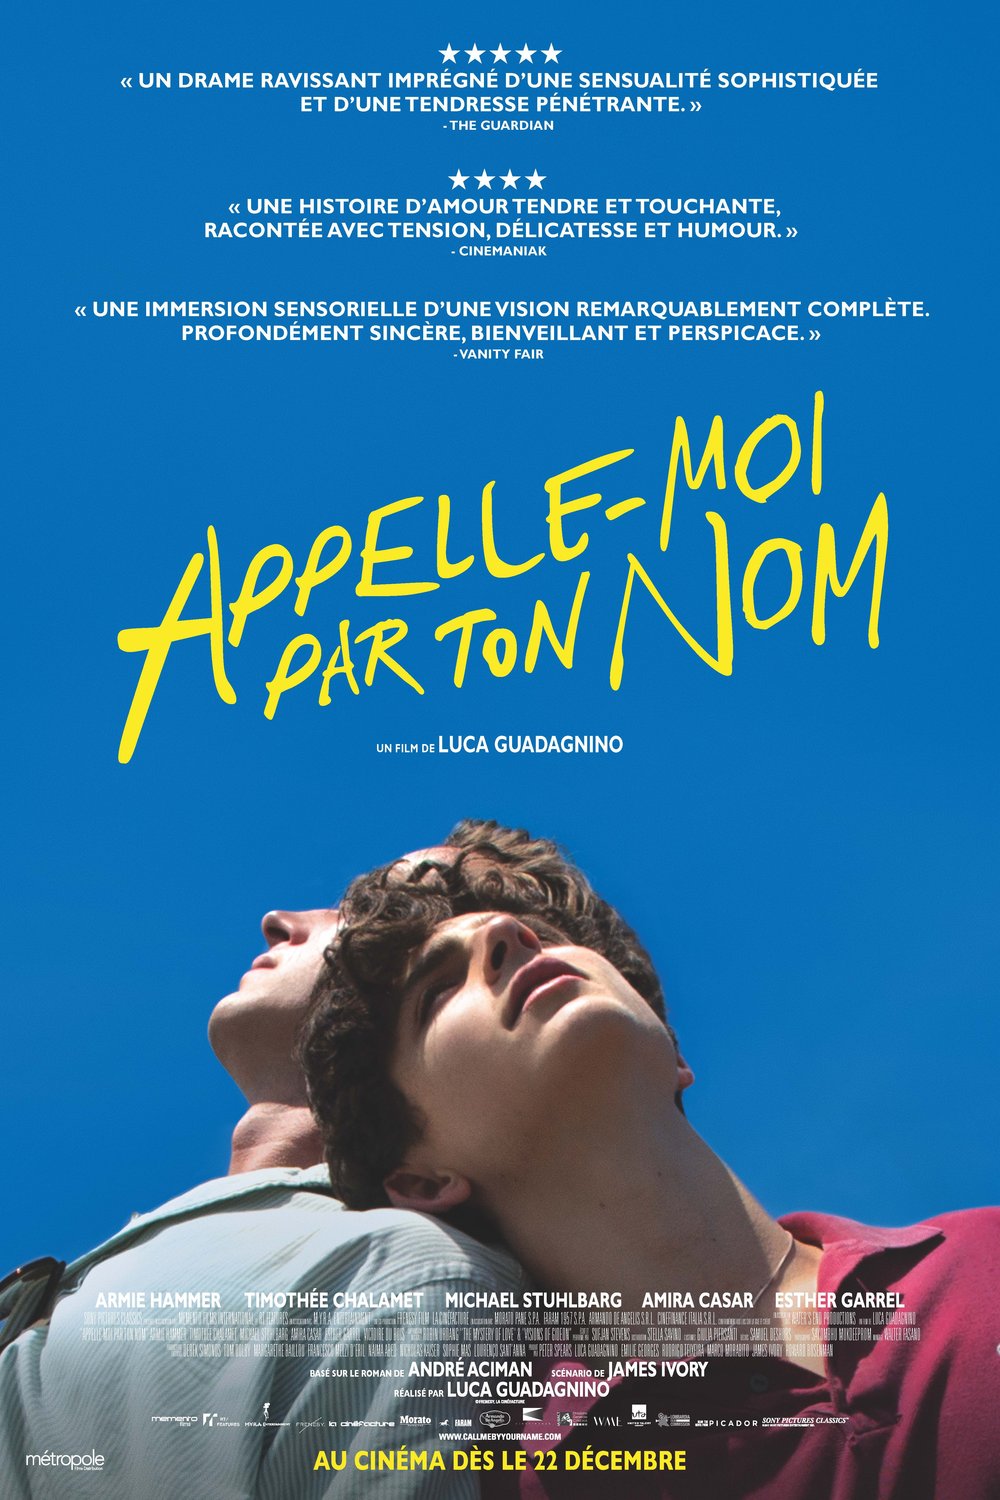 Poster of the movie Appelle-moi par ton nom